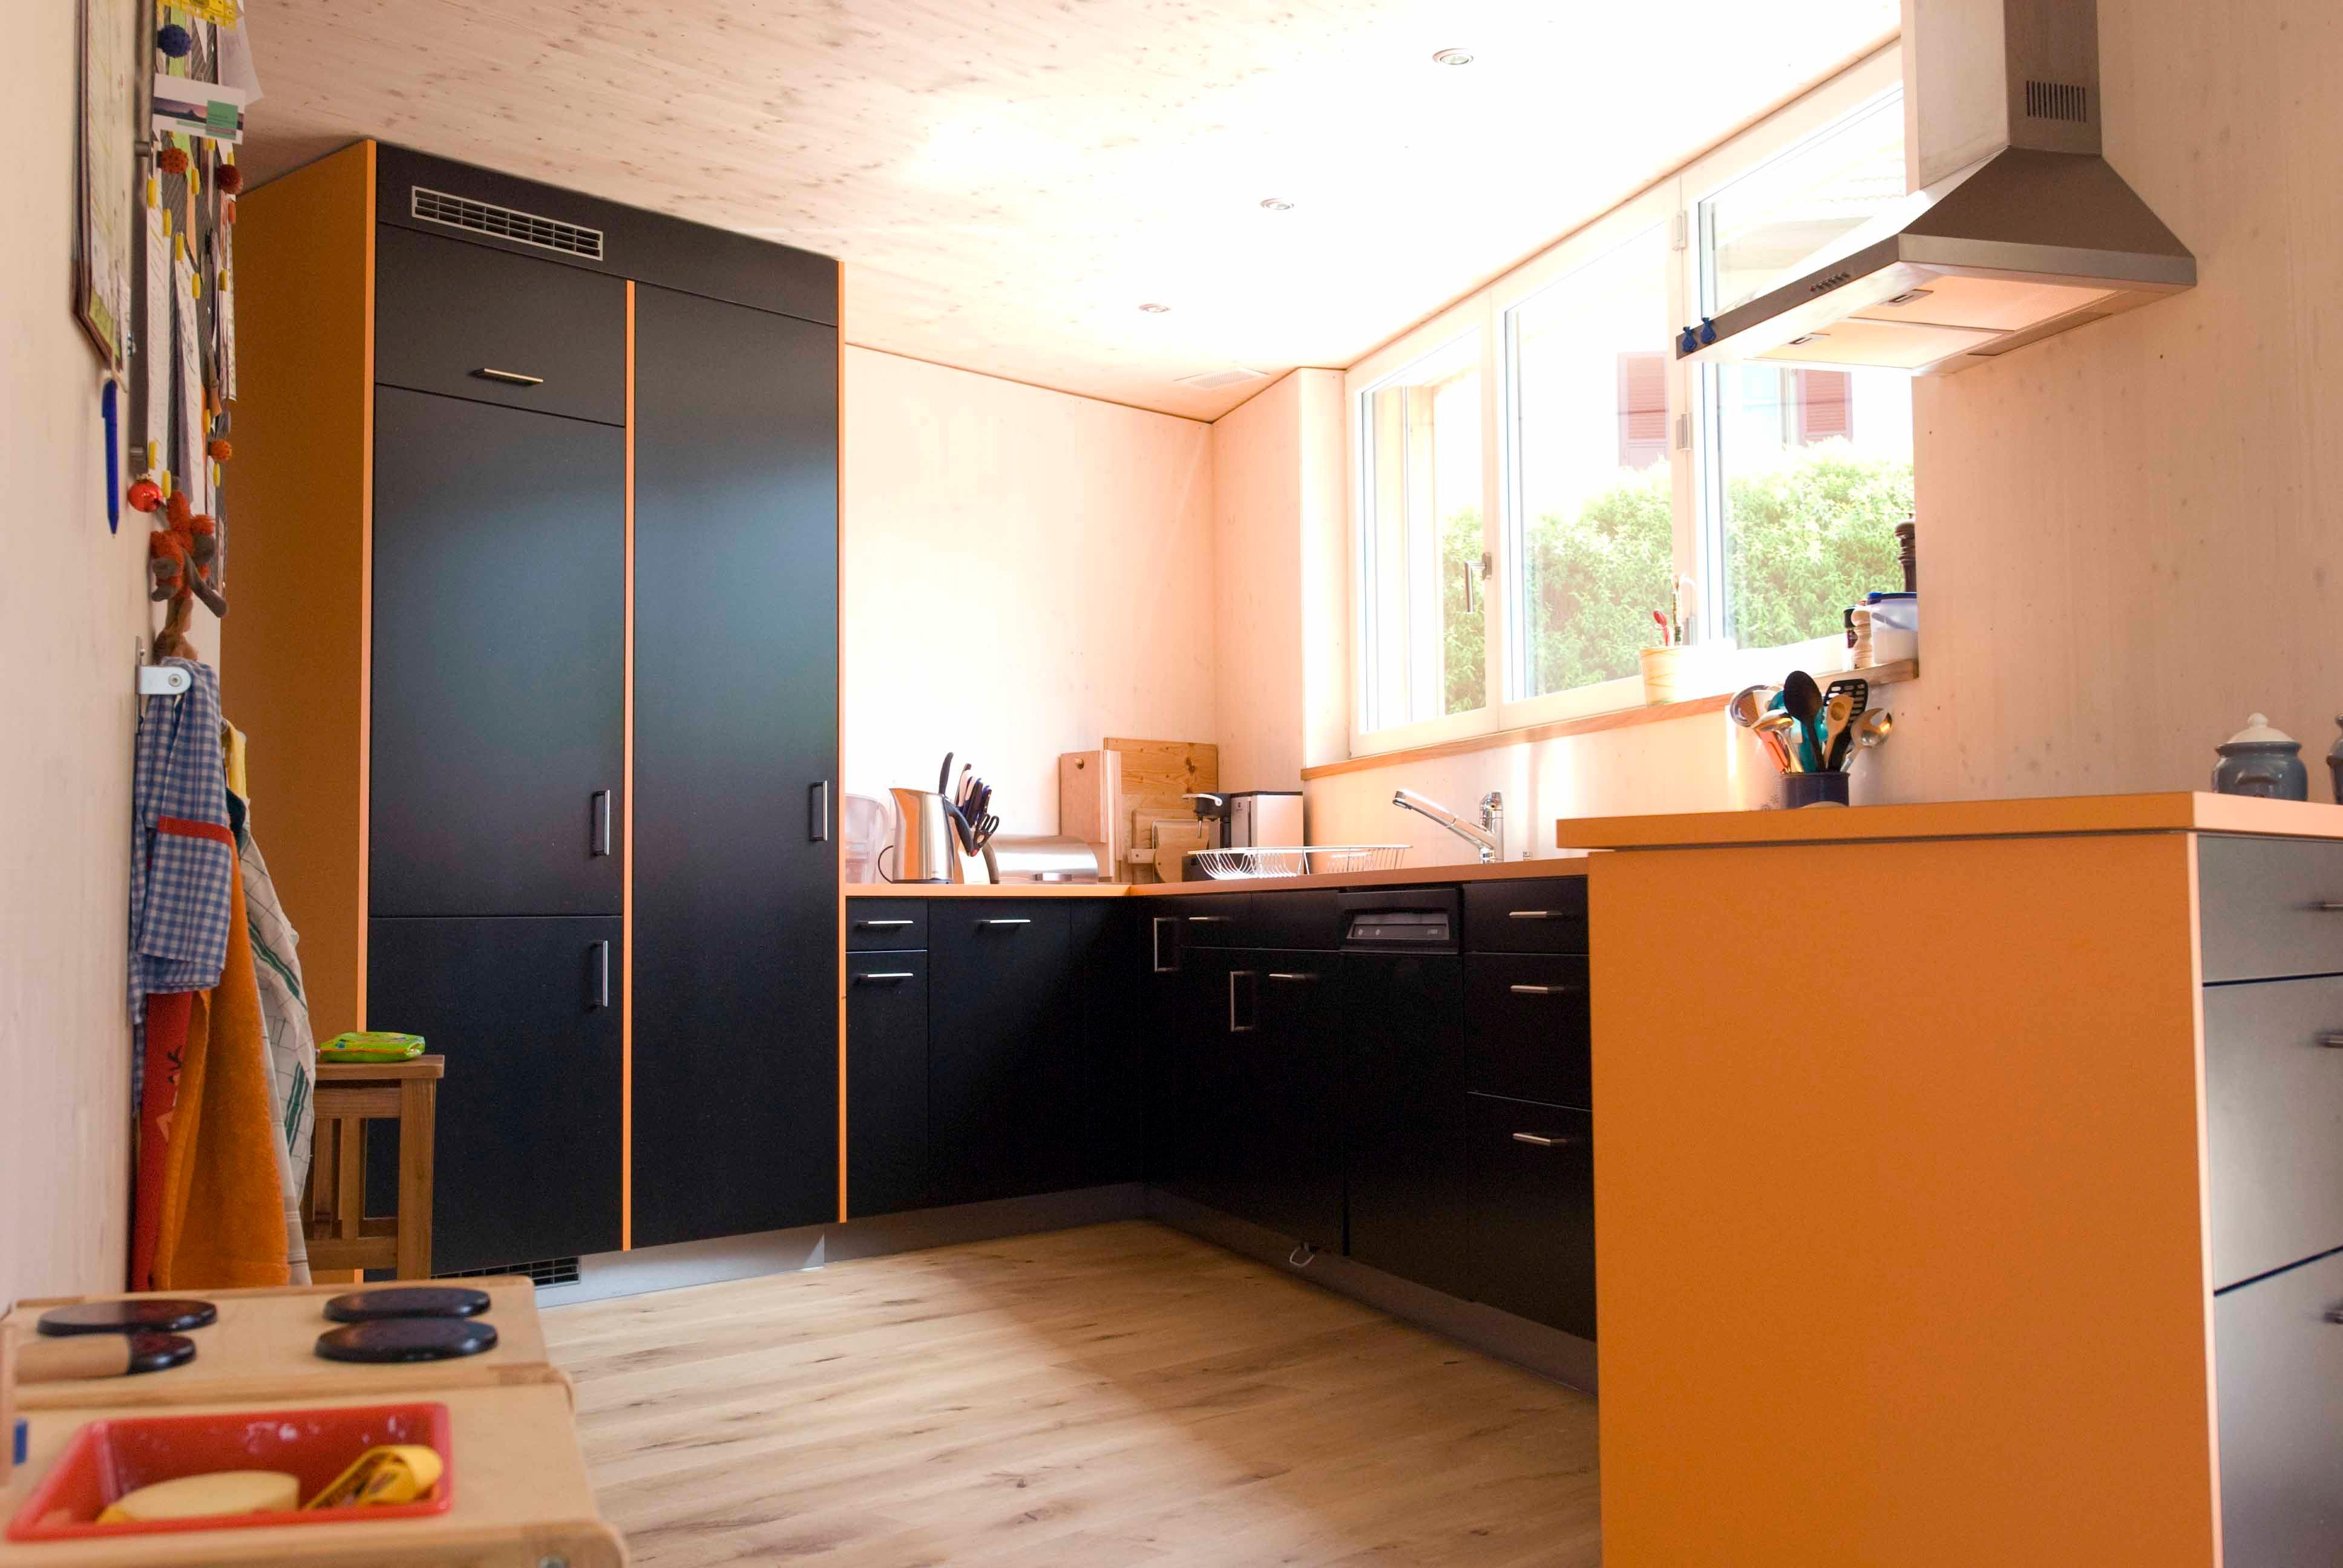  Architektur-Reportage Hessigkofen Sechseck Decke: in der Küche bringen orange und schwarze Elemente Farbe ins Haus